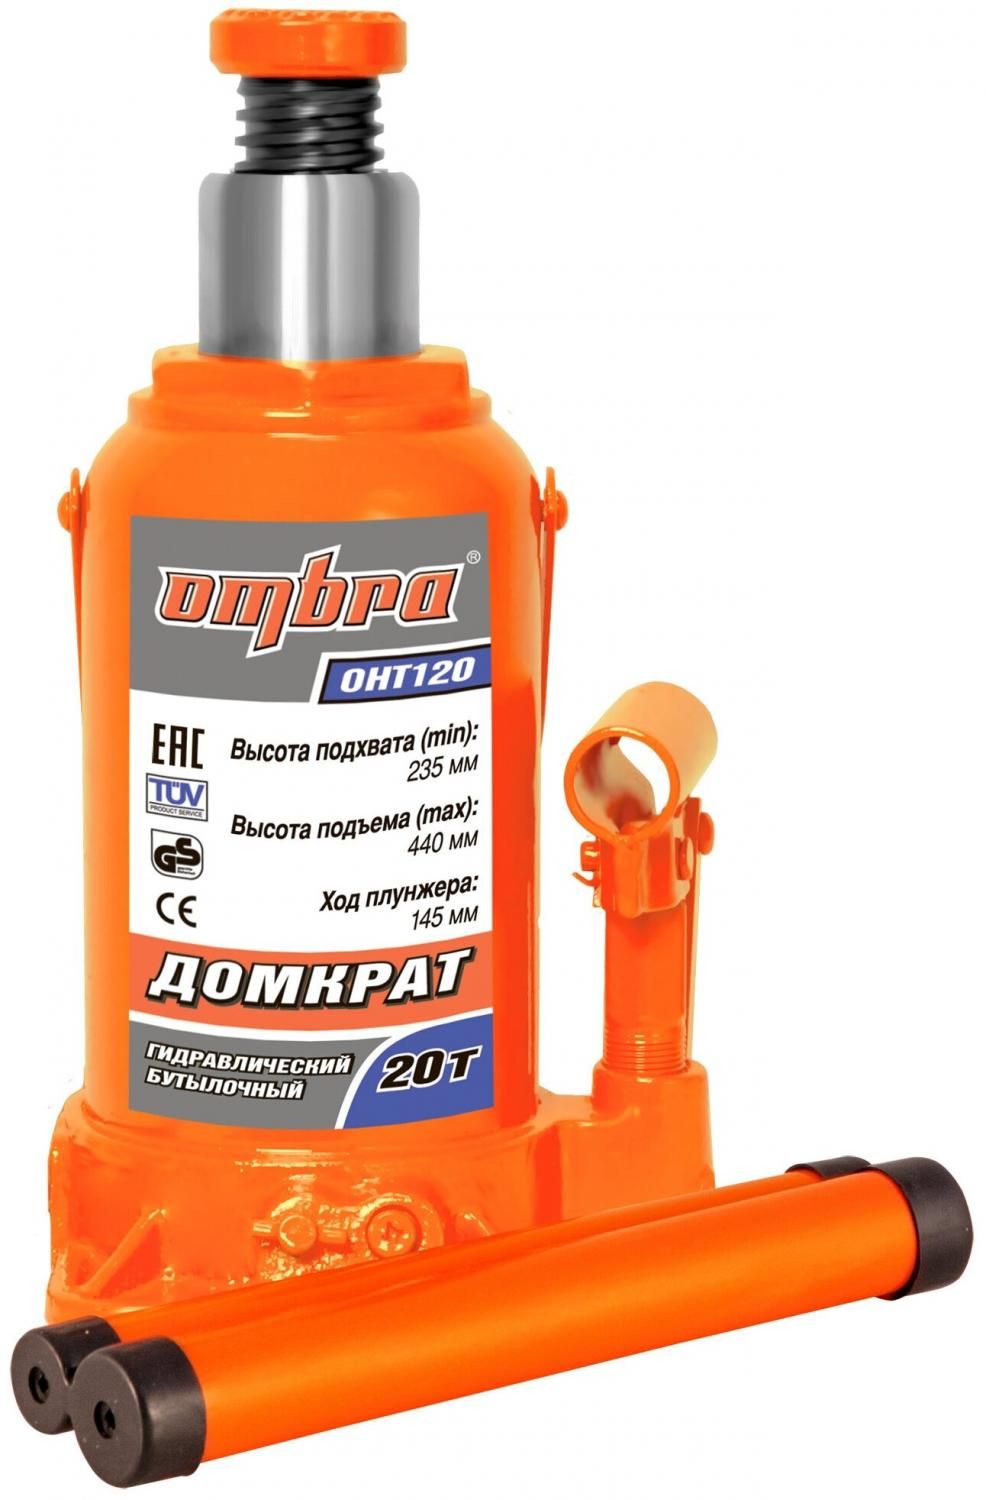 Домкрат бутылочный гидравлический Ombra OHT120 (20 т) оранжевый